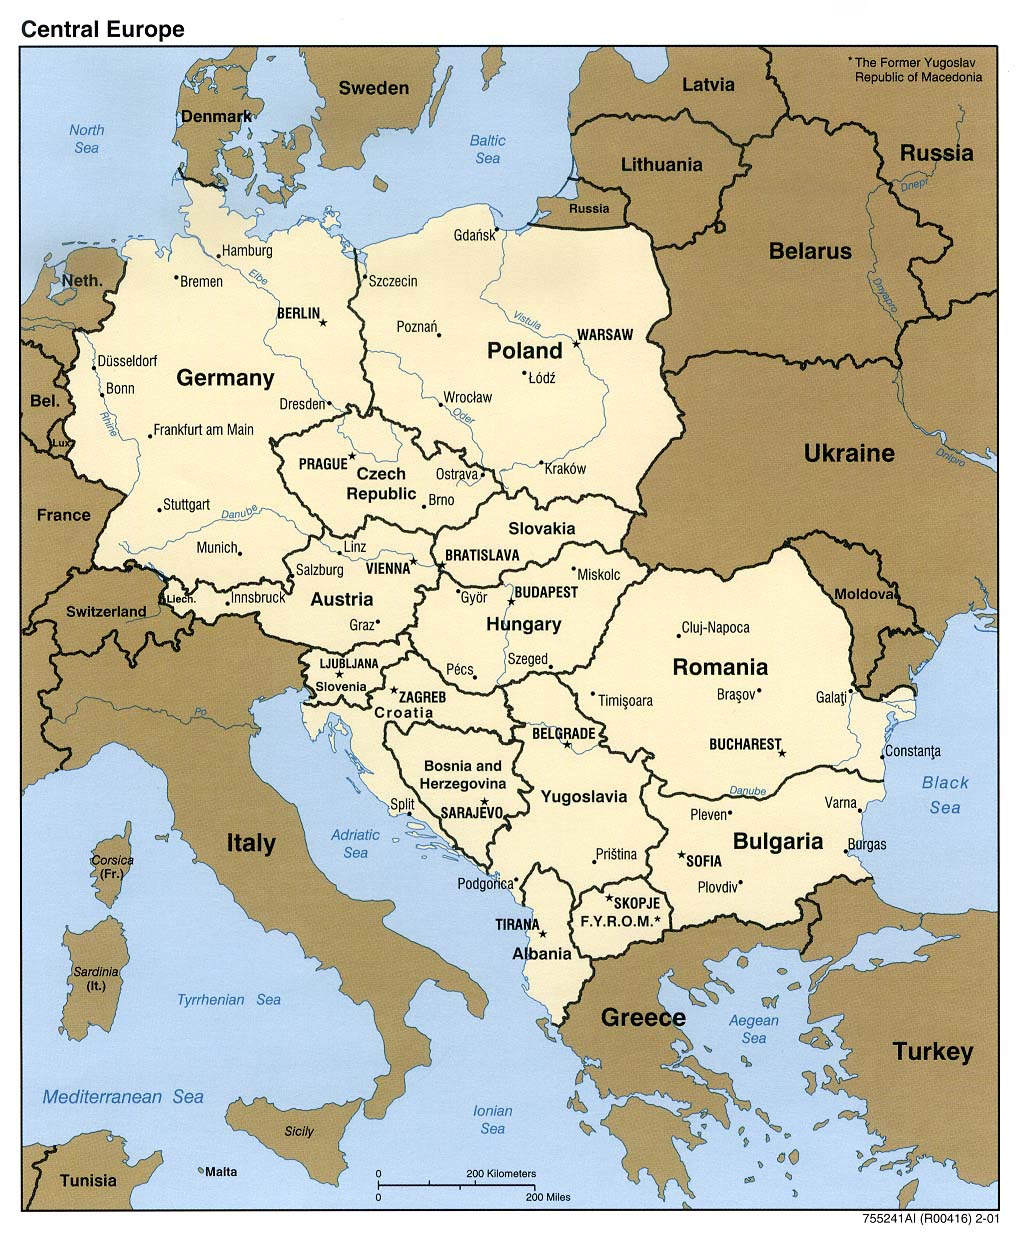 Politisk kart Sentral Europa 2001